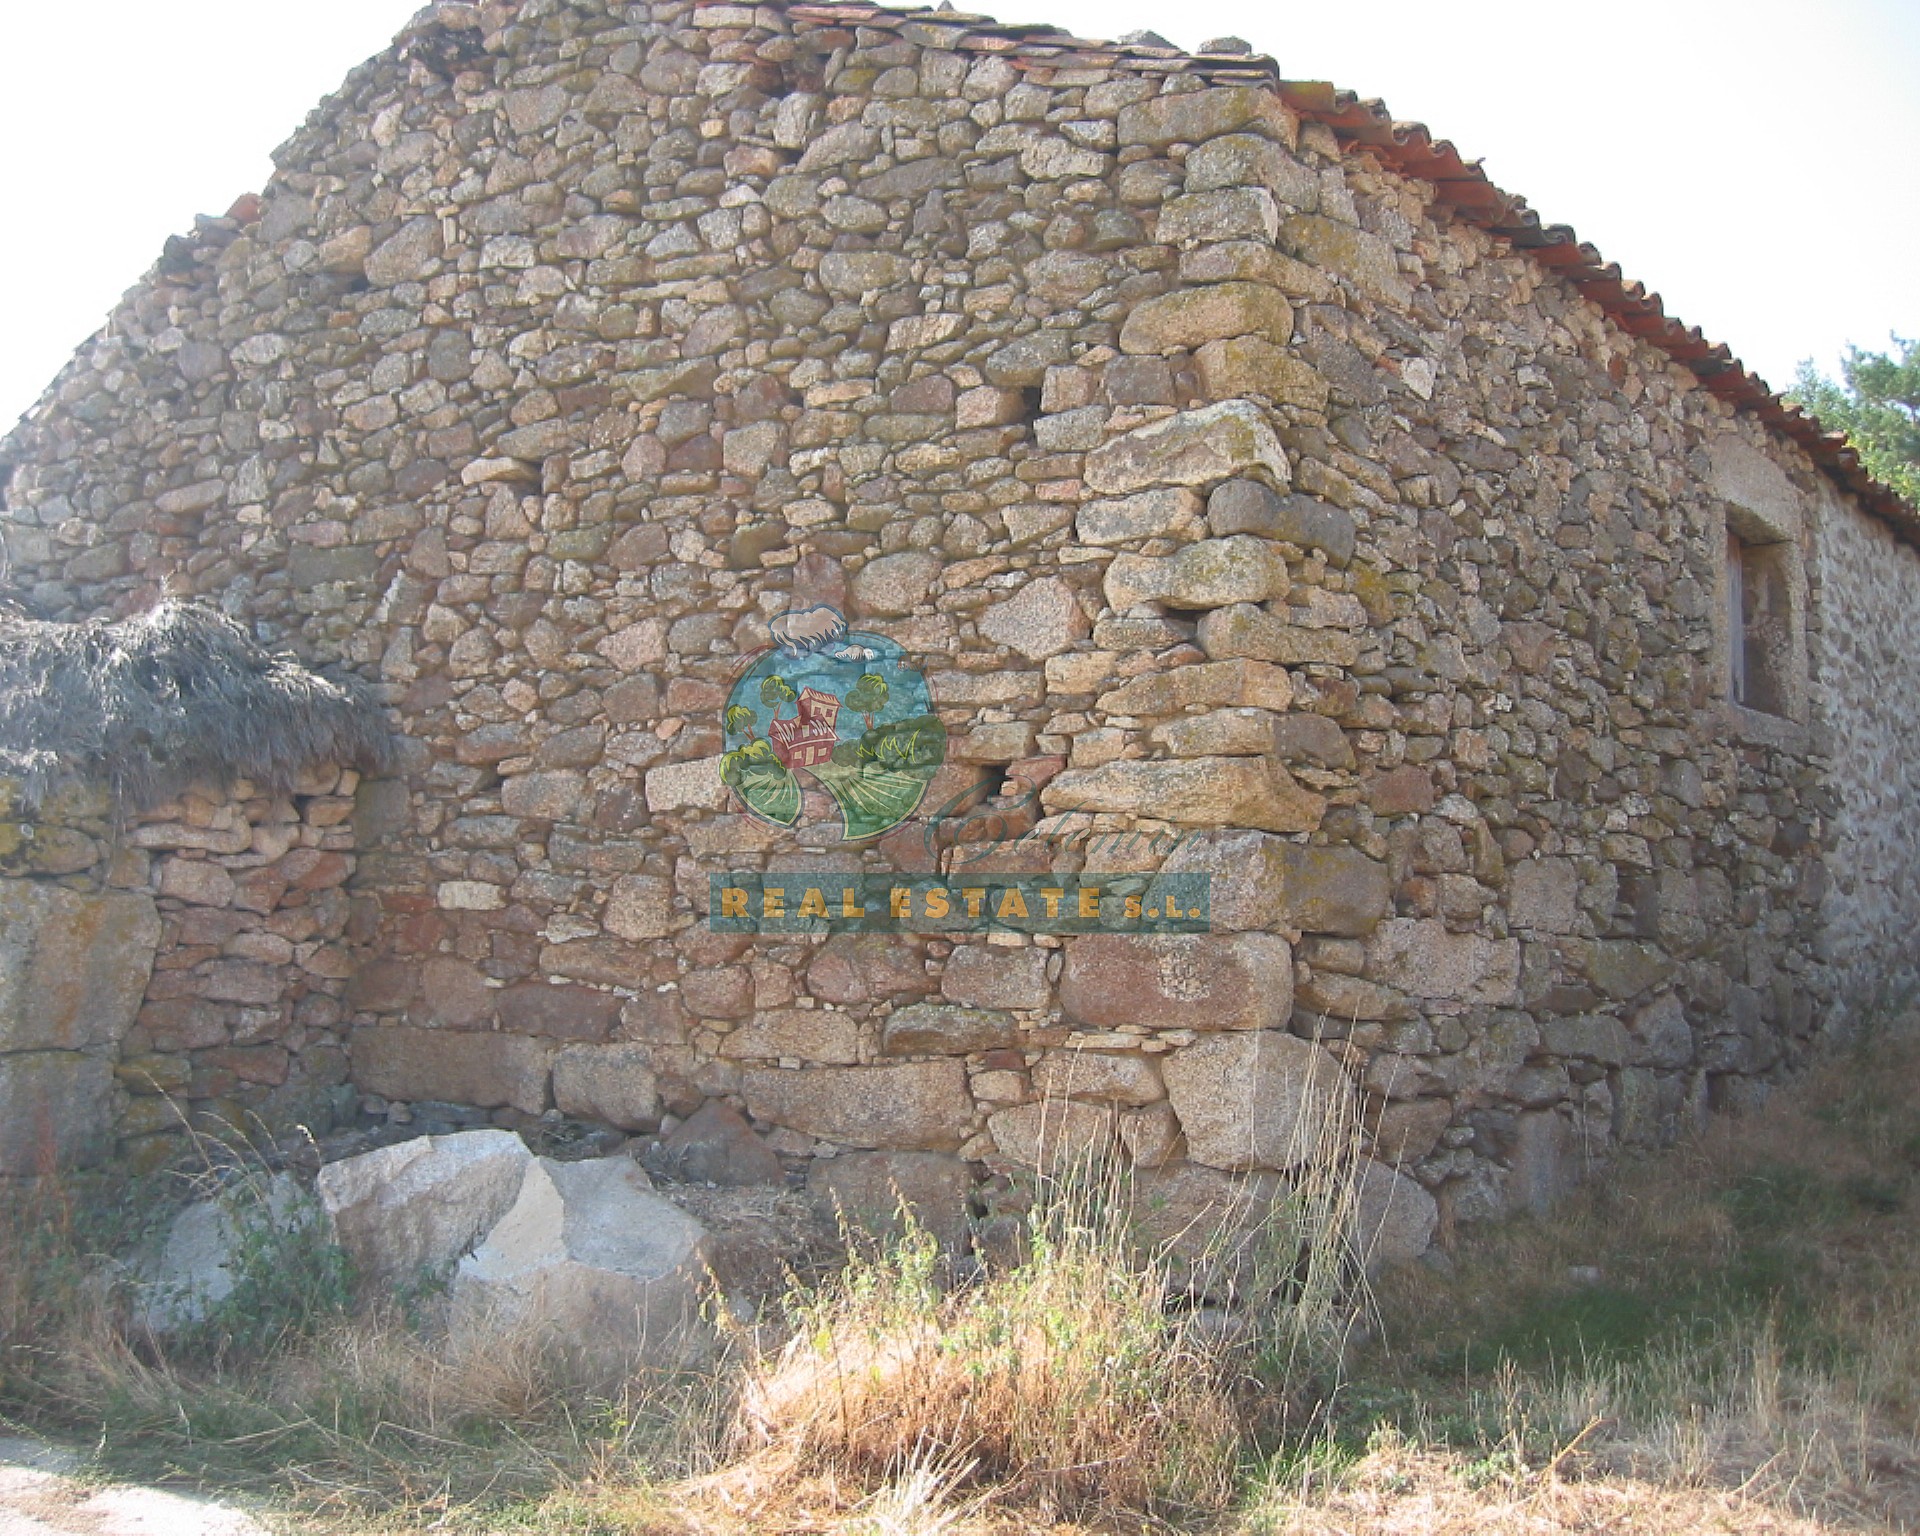 In San Martín de la Vega del Alberche.